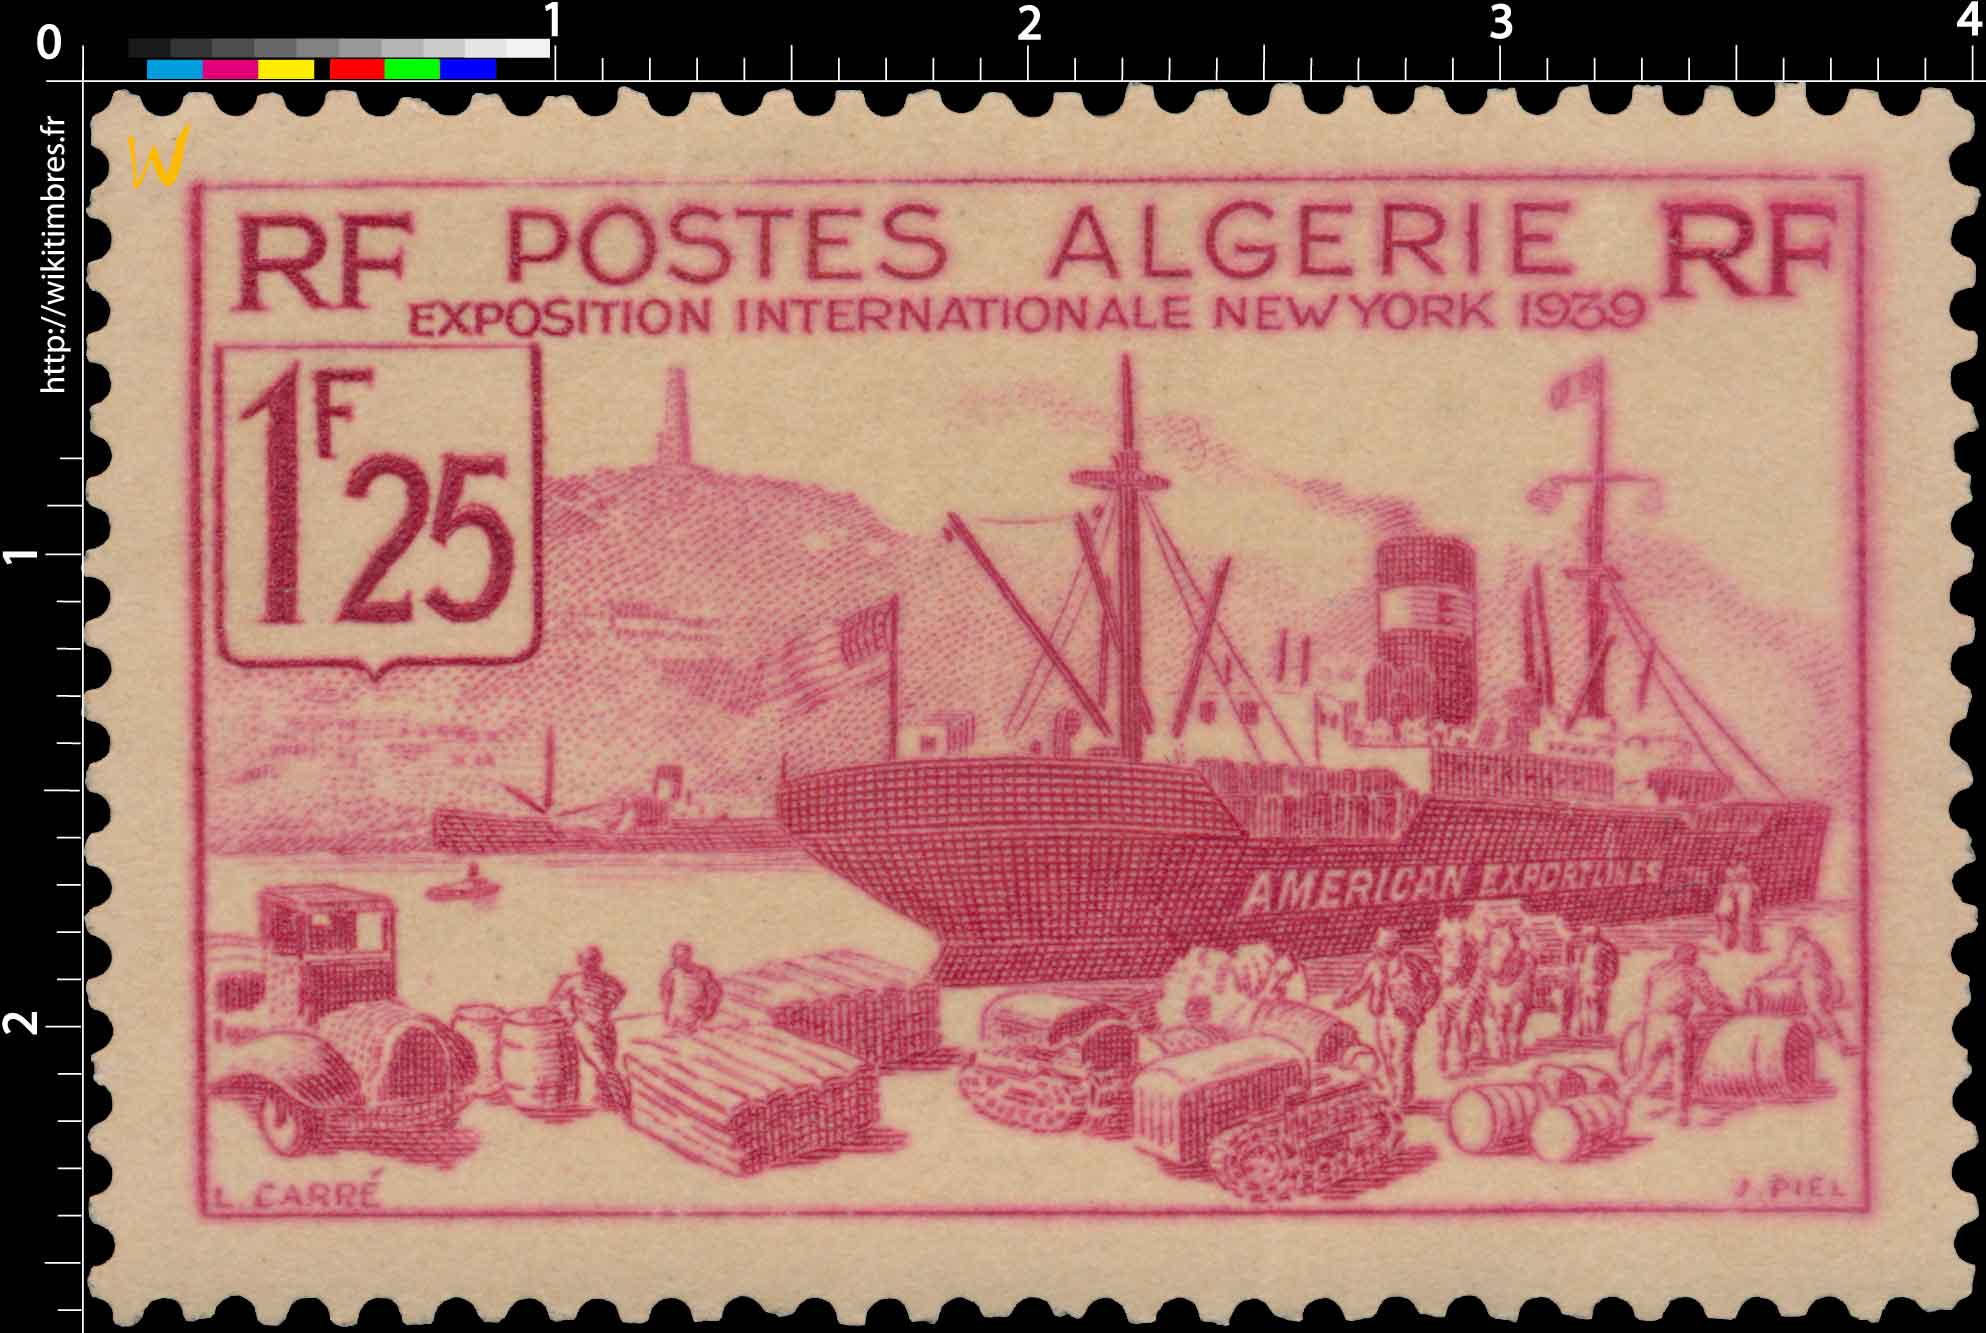 Algérie - Exposition internationale de New-York